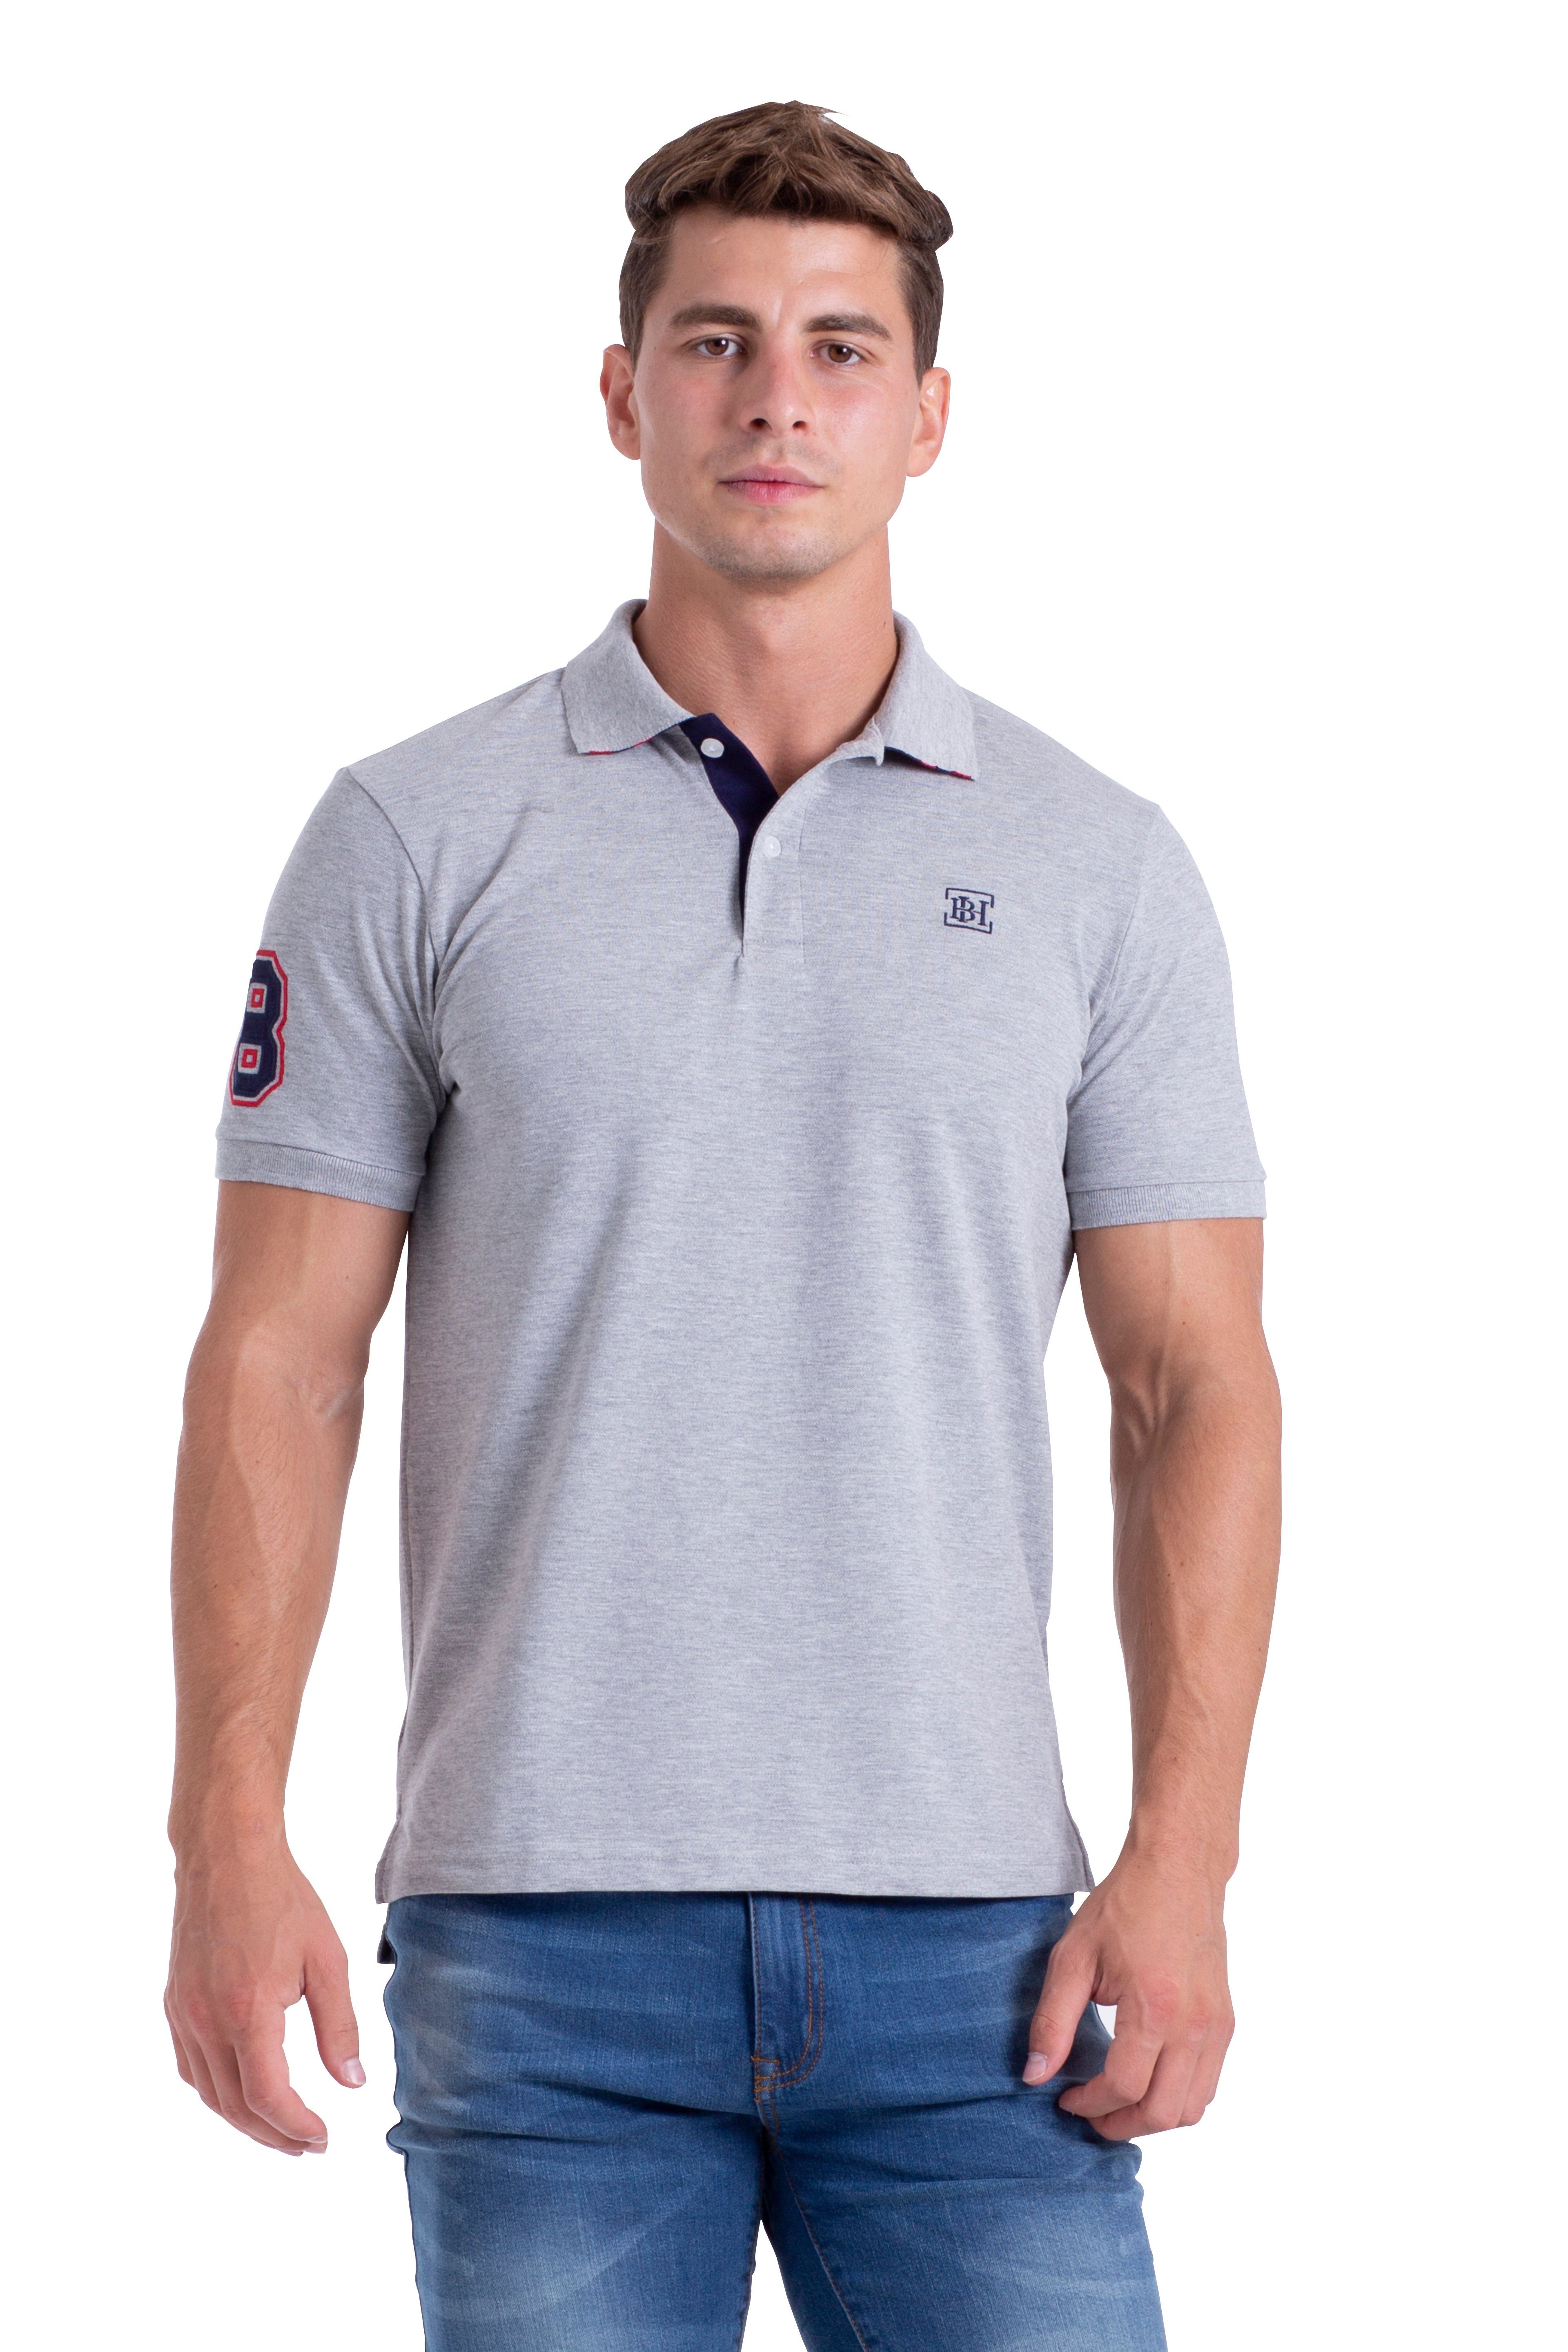 Damen Polohemd Hemd T-Shirt Poloshirt 100% Baumwolle Grau Farben Gr S XXL 